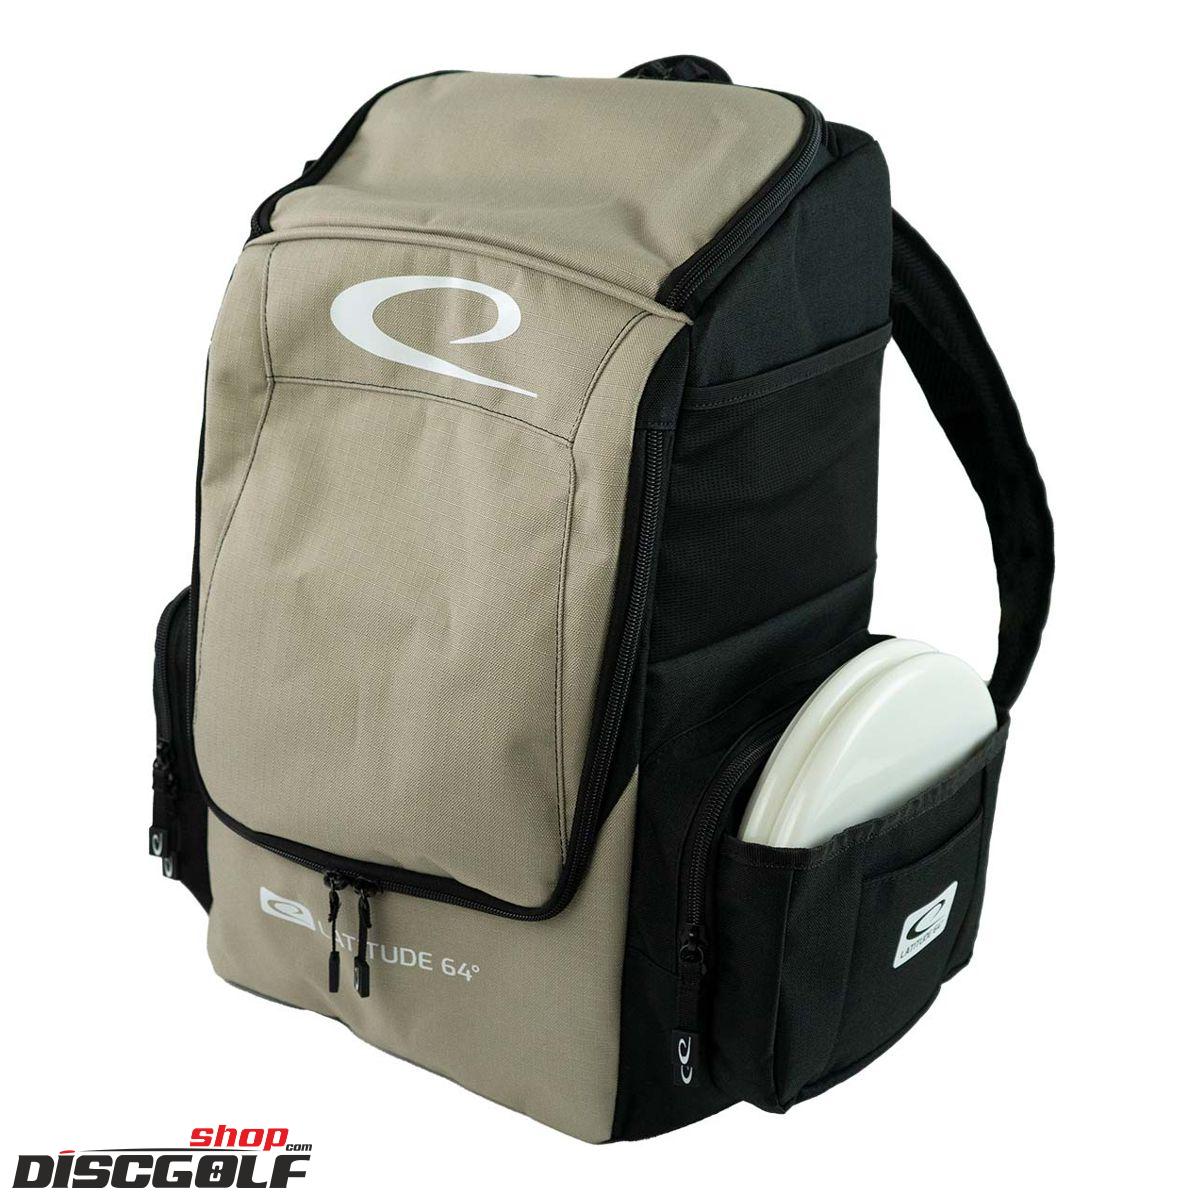 Latitude 64º Core Pro E2 Backpack - Černo-béžová/Black-Sand-beige (discgolf)